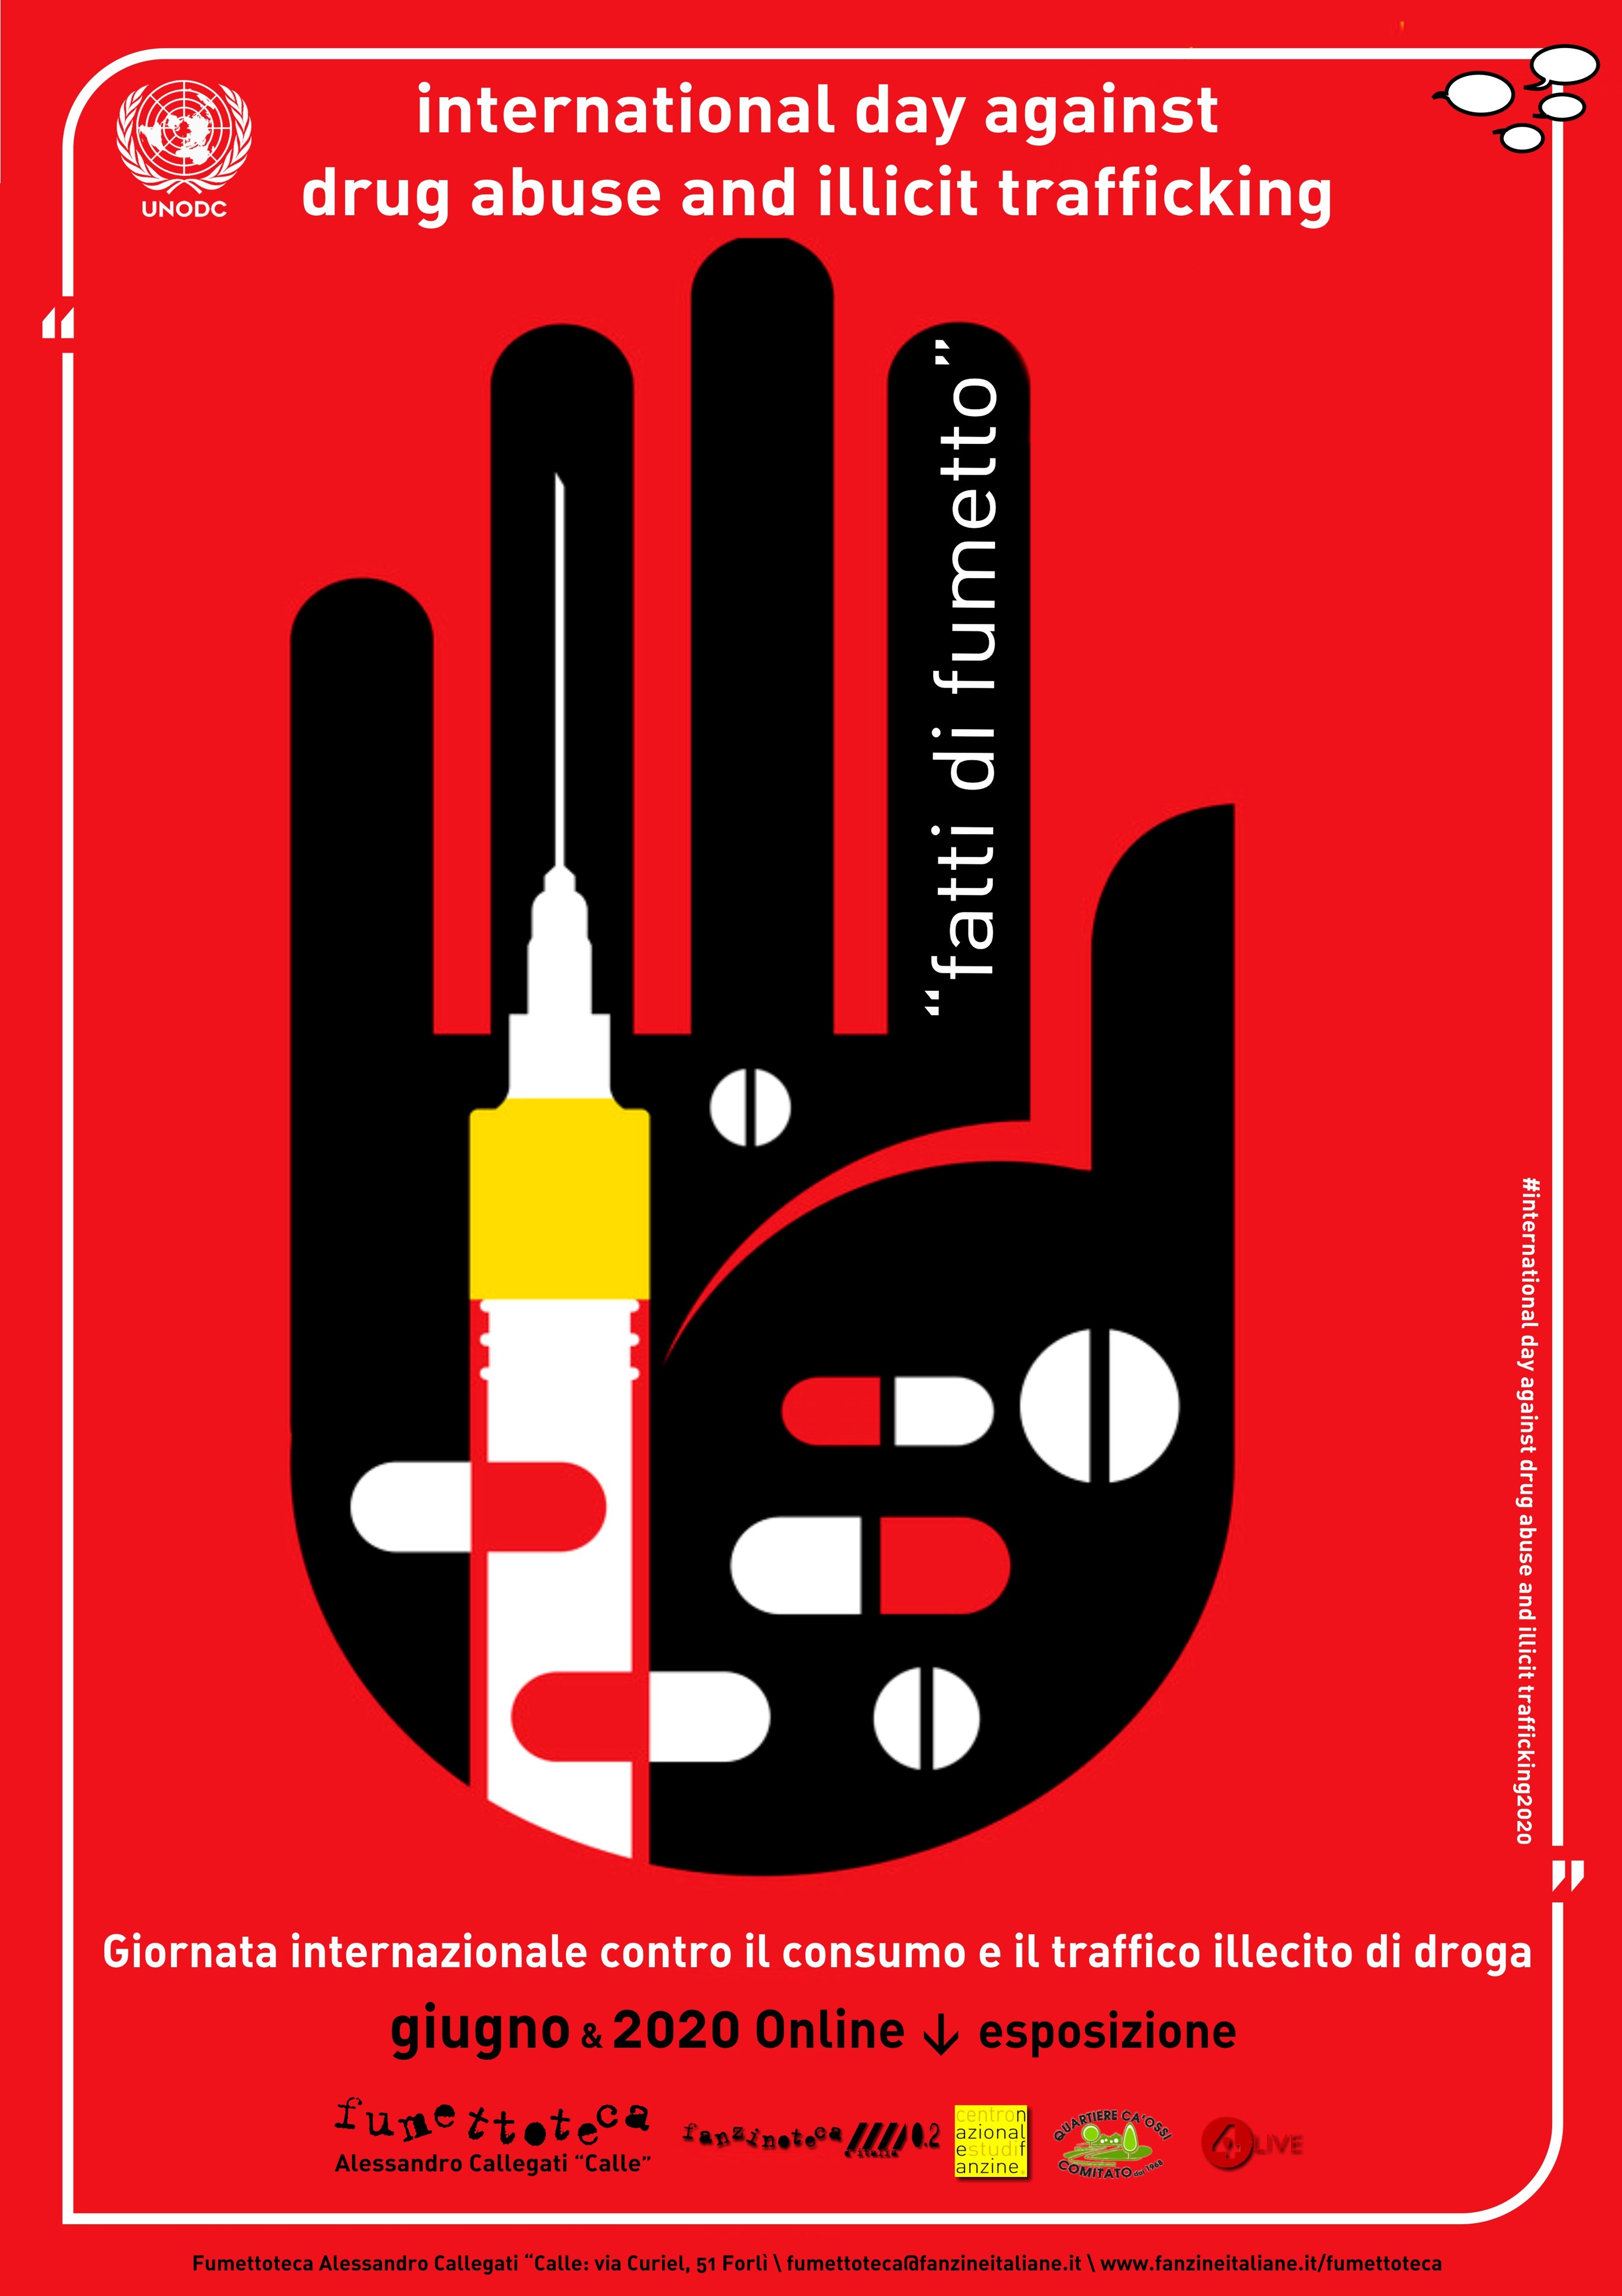 Fumettoteca Alessandro Callegati "Calle" - "Giornata Internazionale contro la droga" Locandina - 26/30 giugno 2020